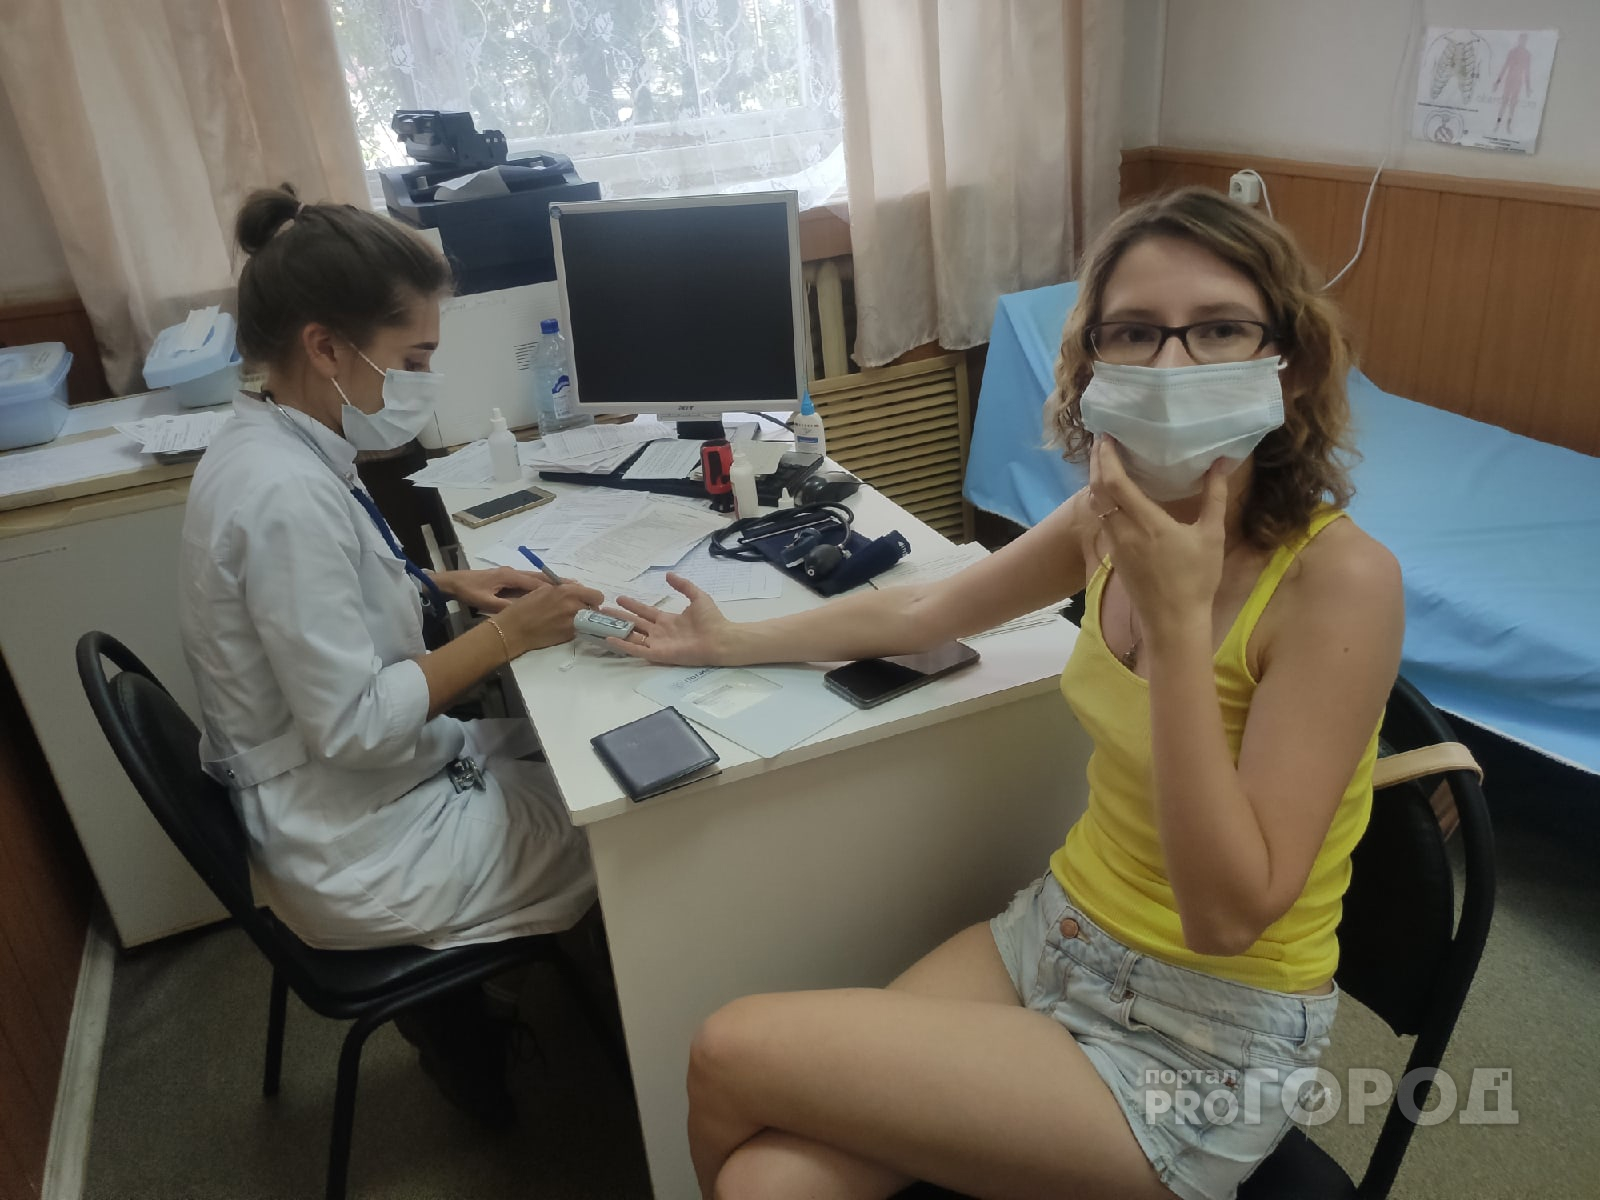 "Нас развернули": записавшимся на прививку через Госуслуги ярославцам не хватило вакцин